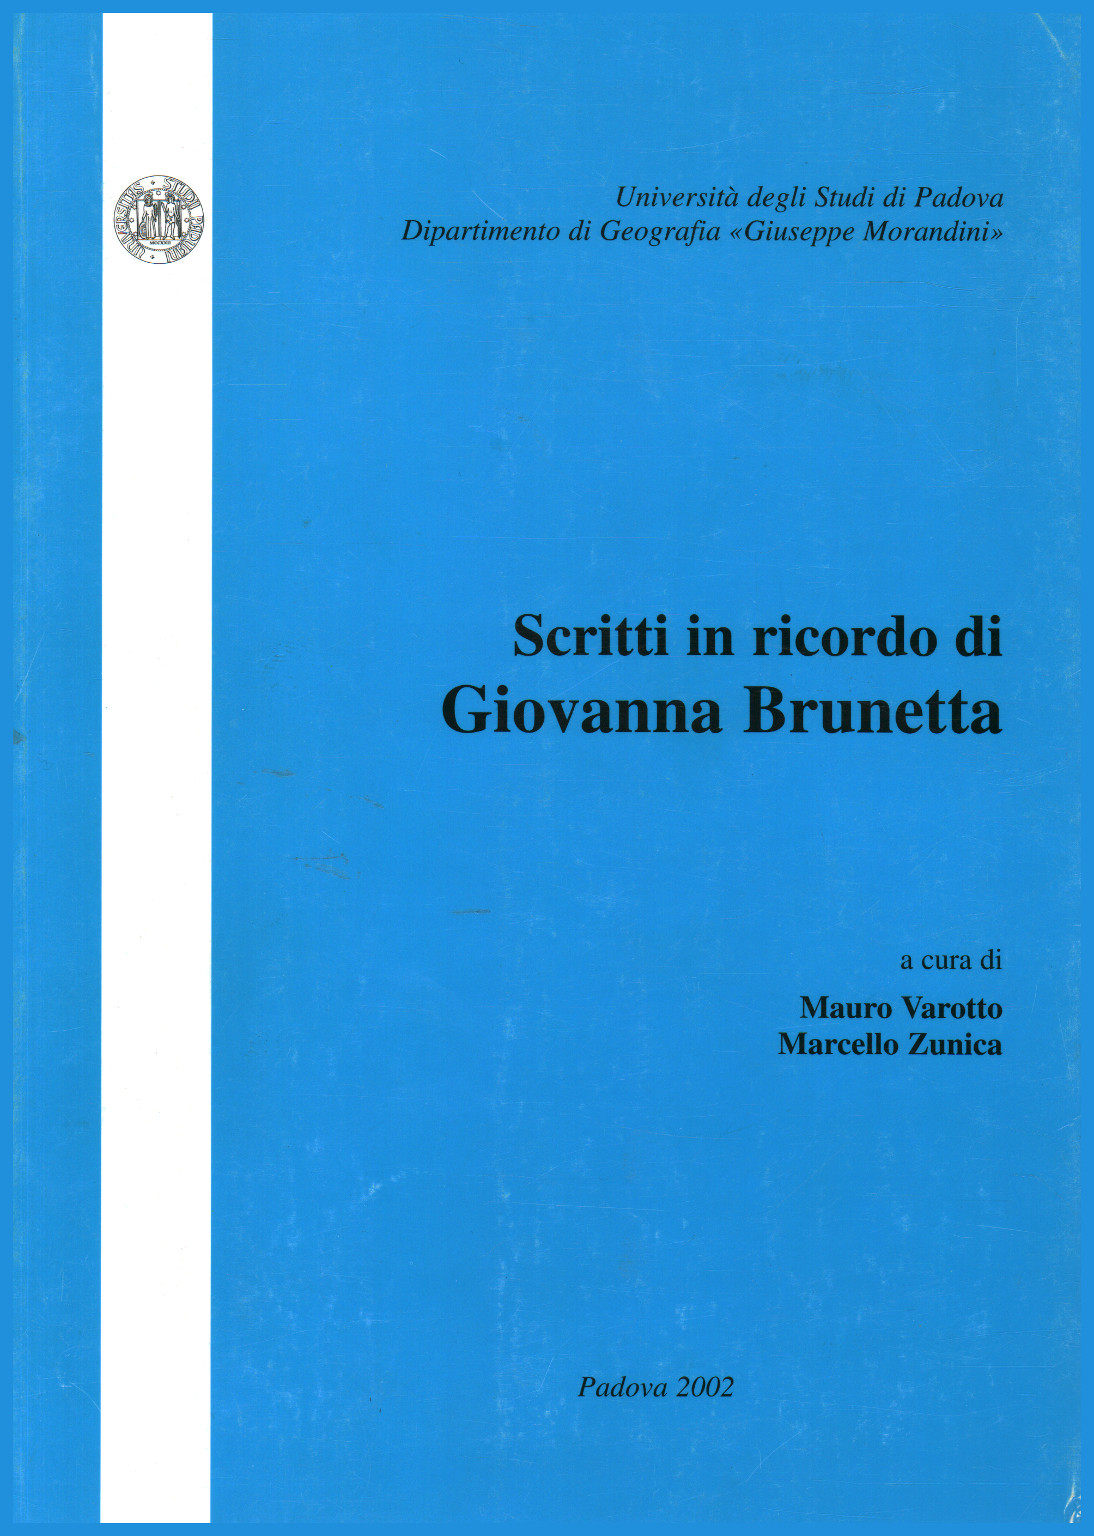 Escritos en memoria de Giovanna Brunetta, Mauro Varotto Marcello Zunica